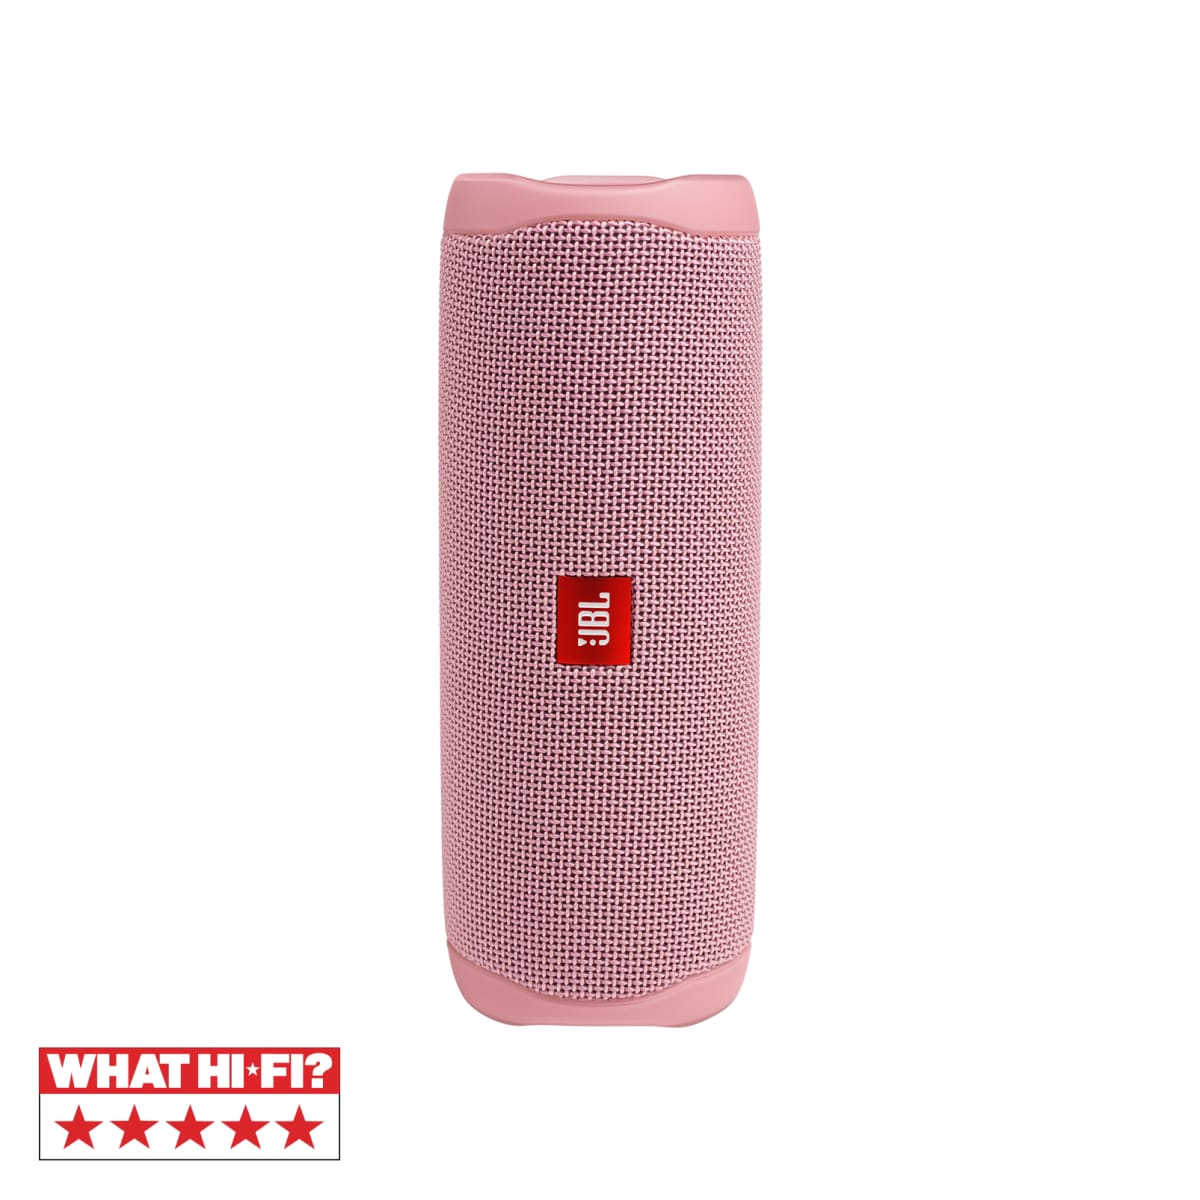 JBL Flip 5 Portable Waterproof Bluetooth Speaker - Pink